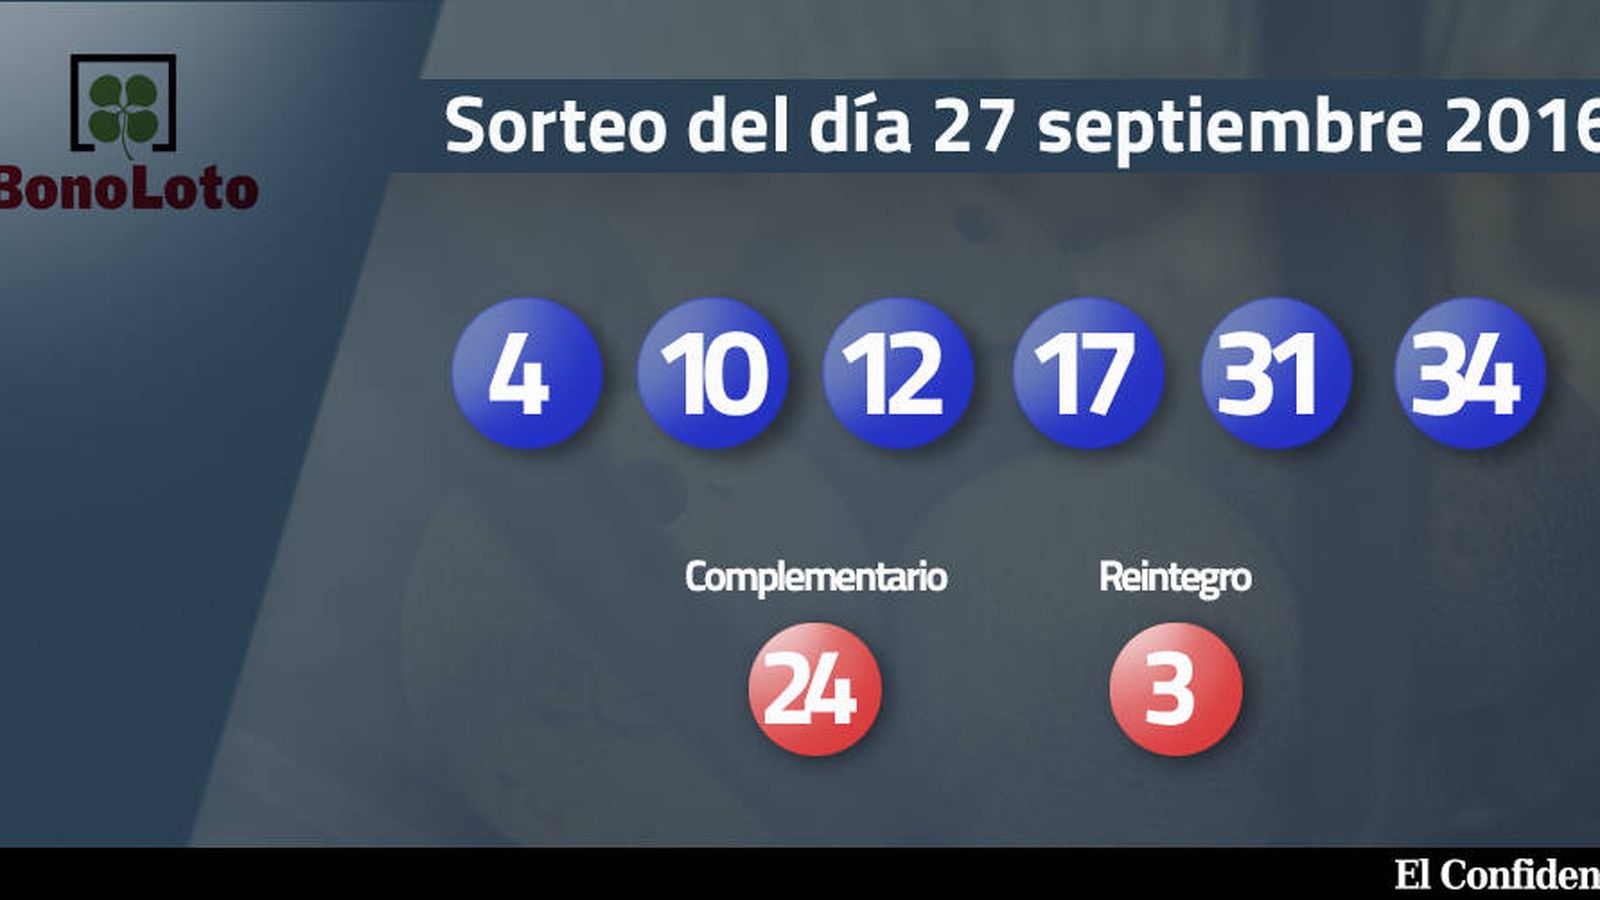 Foto: Resultados del sorteo de la Bonoloto del 27 septiembre 2016 (EC)